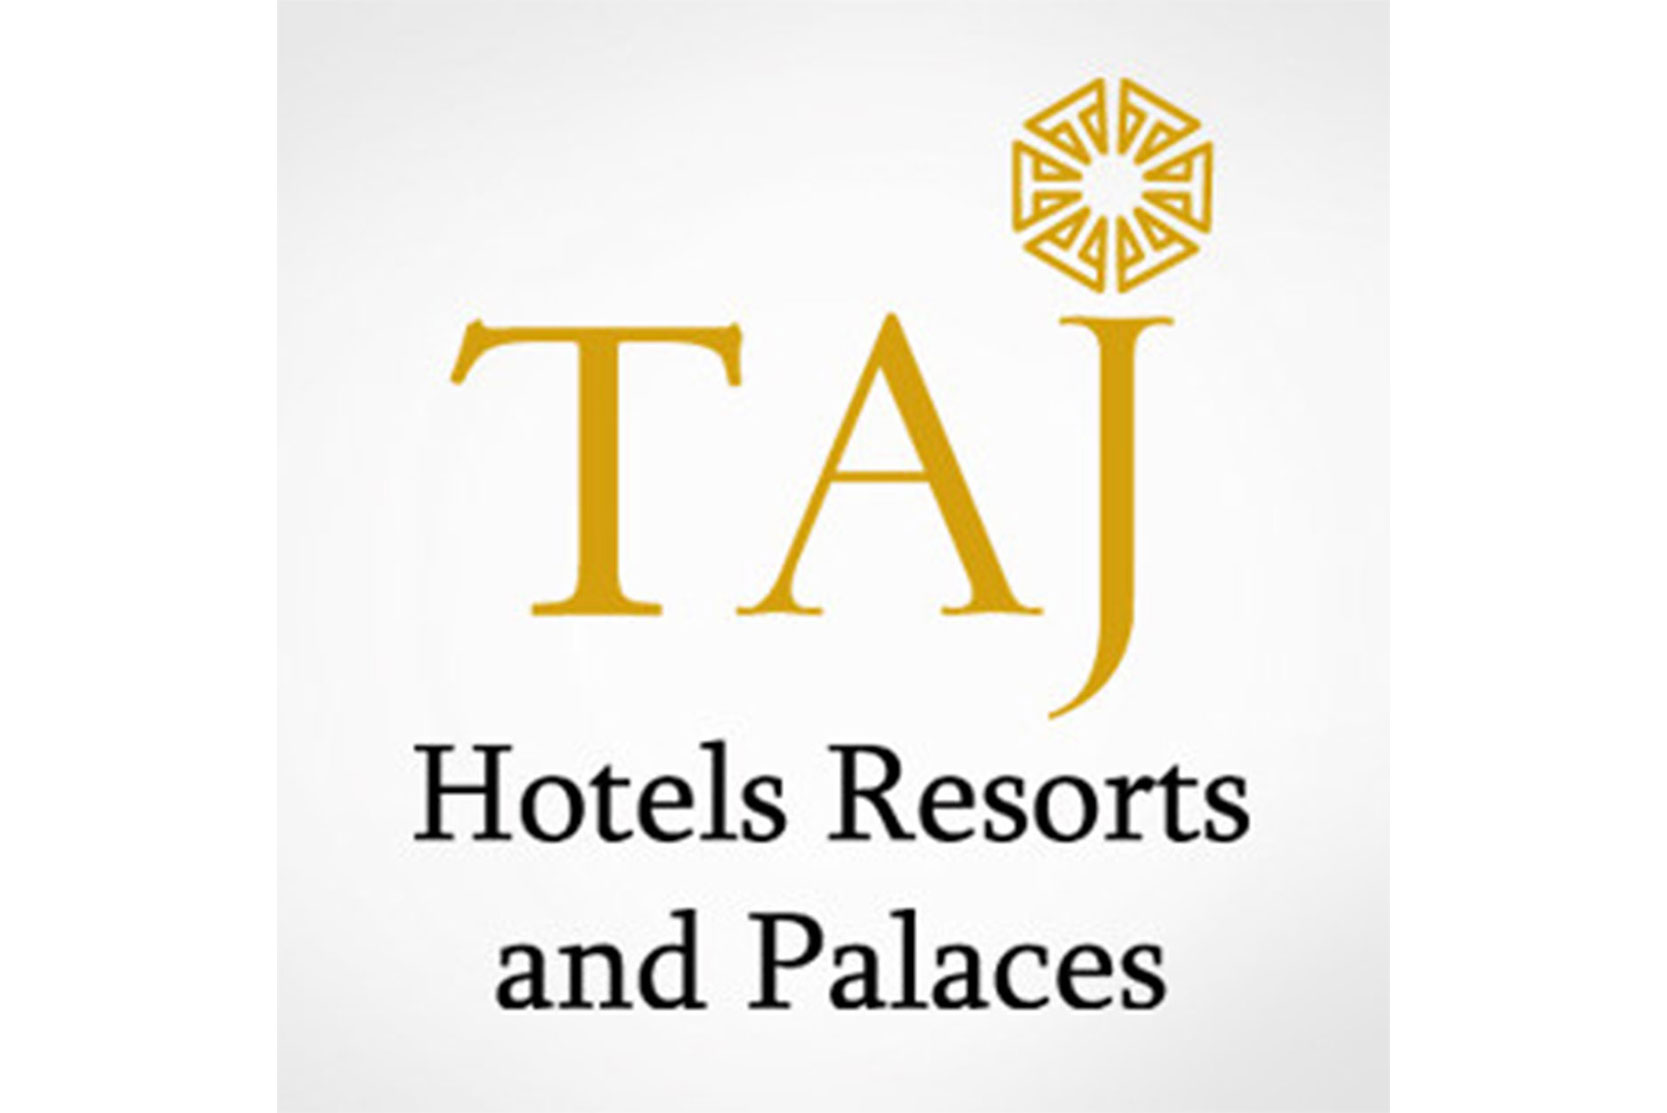 The Taj Logo